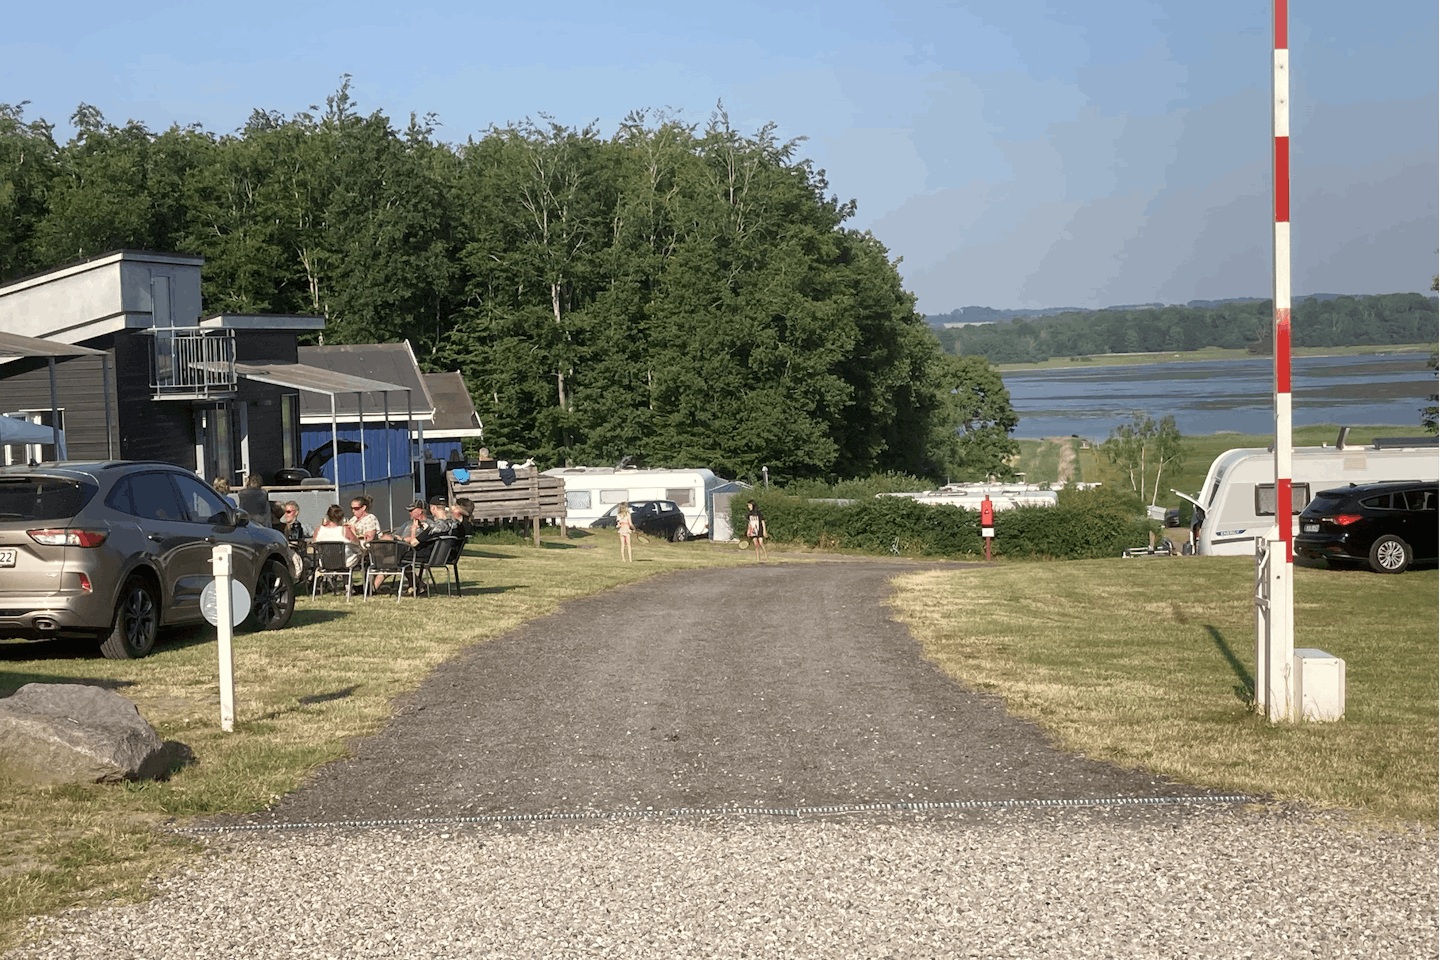 First Camp Tempelkrogen  First Camp Tempelkrogen – Holbæk - Einfahrt des Campingplatzes